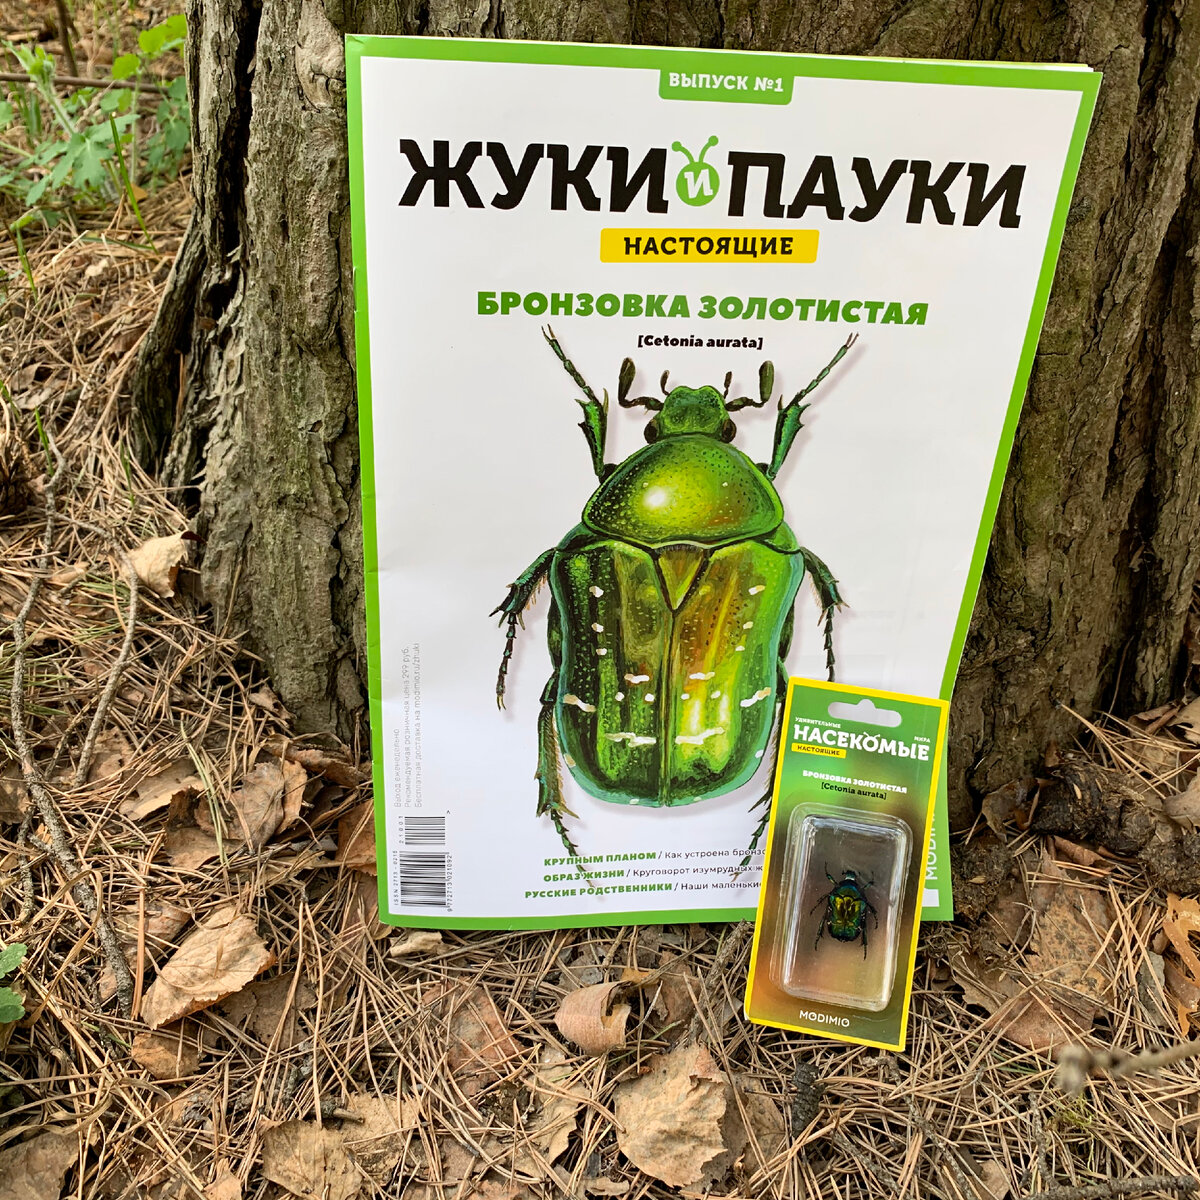 зеленый жук насекомое вырос майский жук (Cetonia aurata) на белом фоне